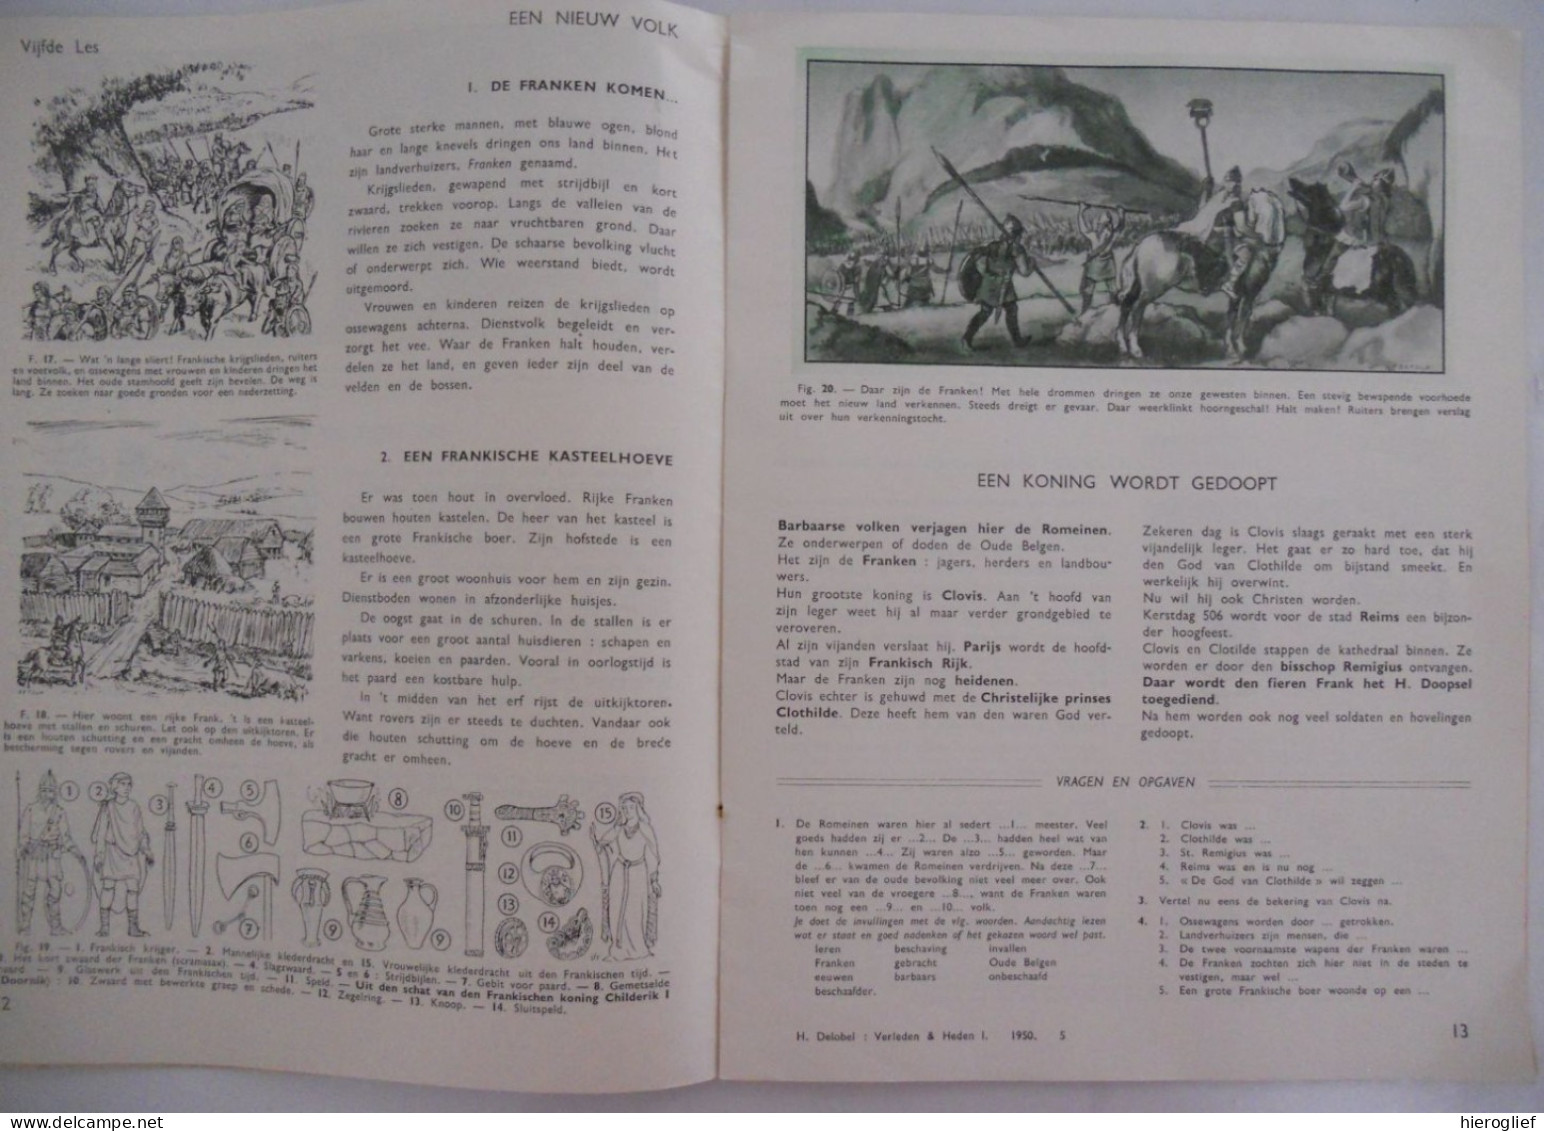 VERLEDEN EN HEDEN Vaderlandse Geschiedenis L.O. Door H. Delobel H. Stalpaert Deel I - ILLUSTRATIES ALBERT SETOLA 1950 - Kids